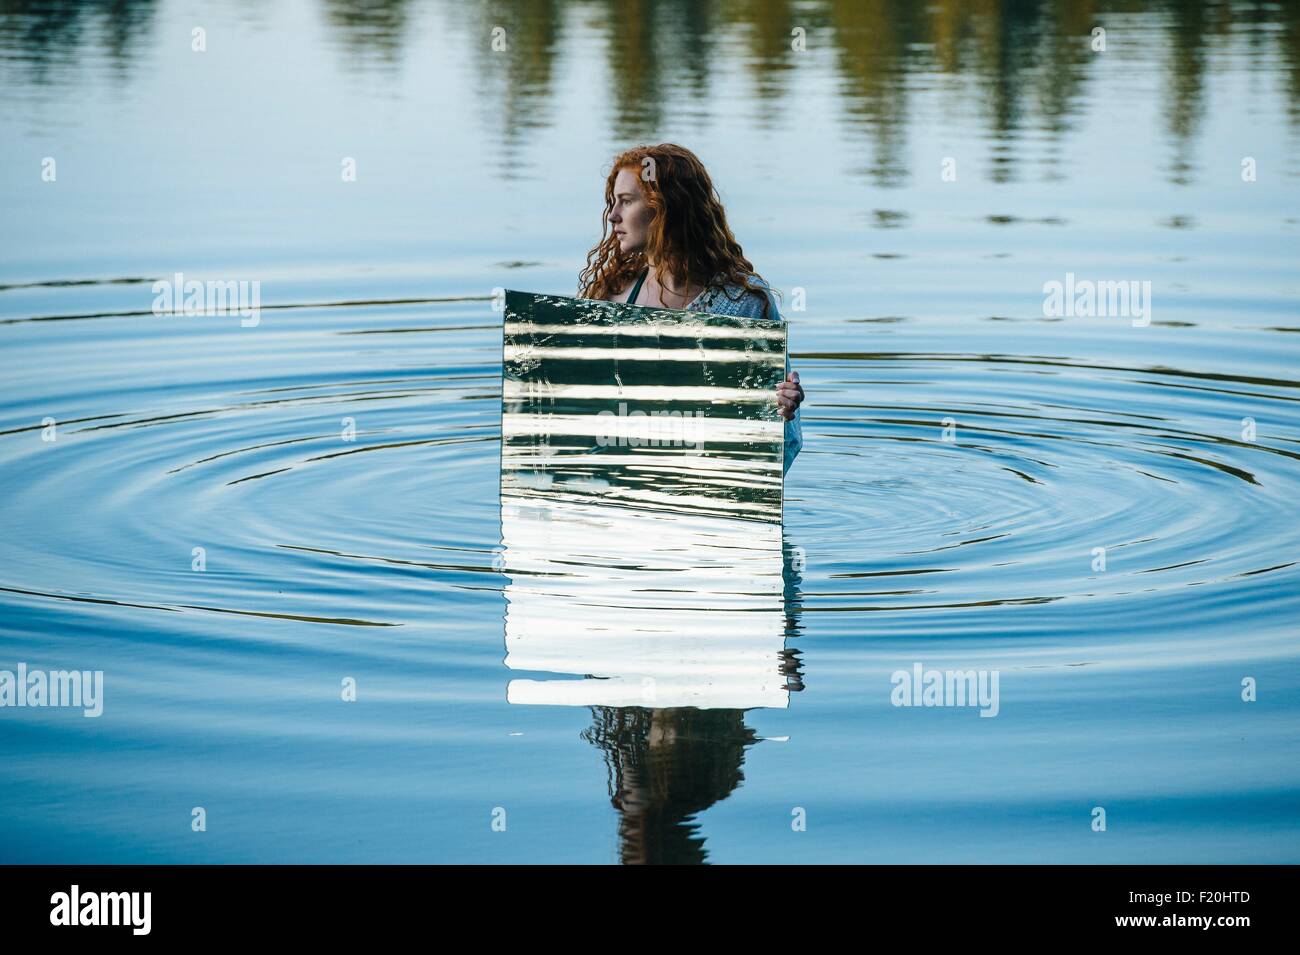 Jeune femme debout dans le lac, tenant un miroir, miroir de l'eau reflétant ripples Banque D'Images